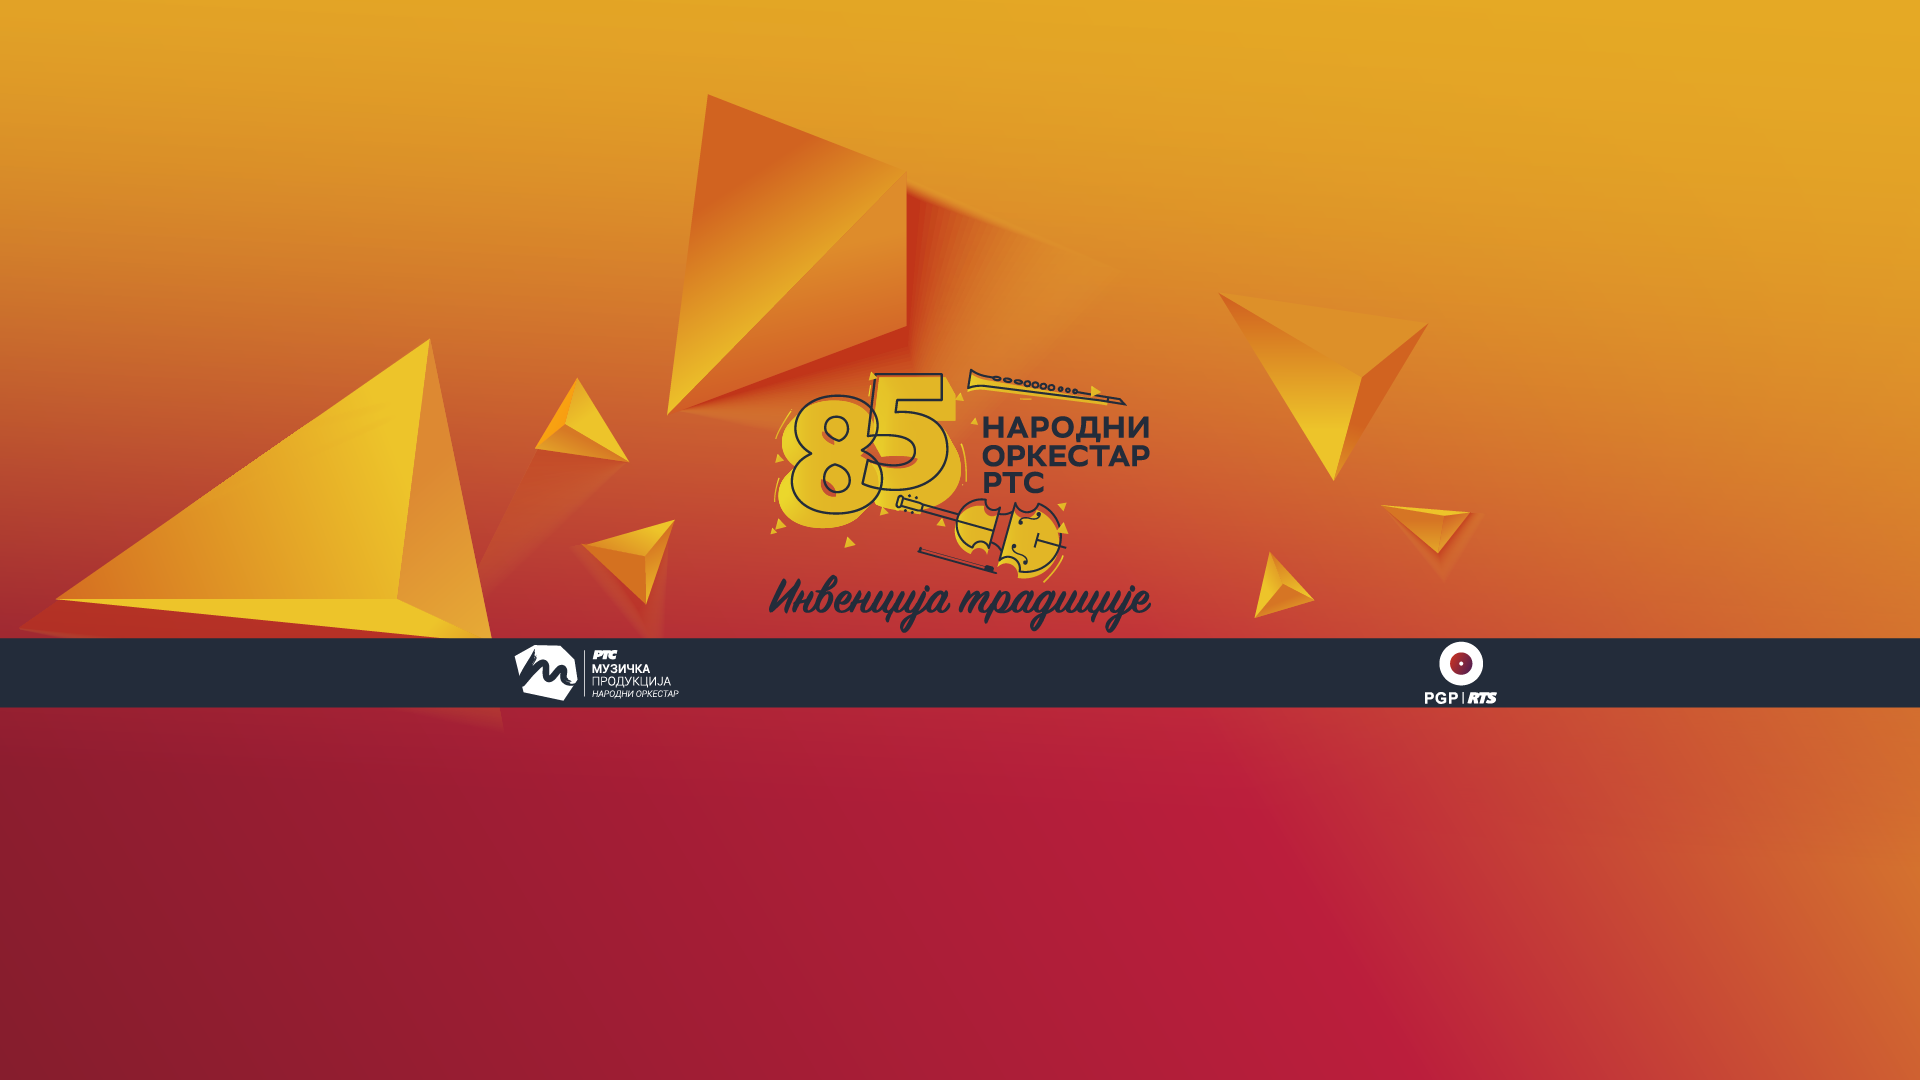 Промоција ЦД издања 85 година Народног оркестра РТС „Инвенција традиције“